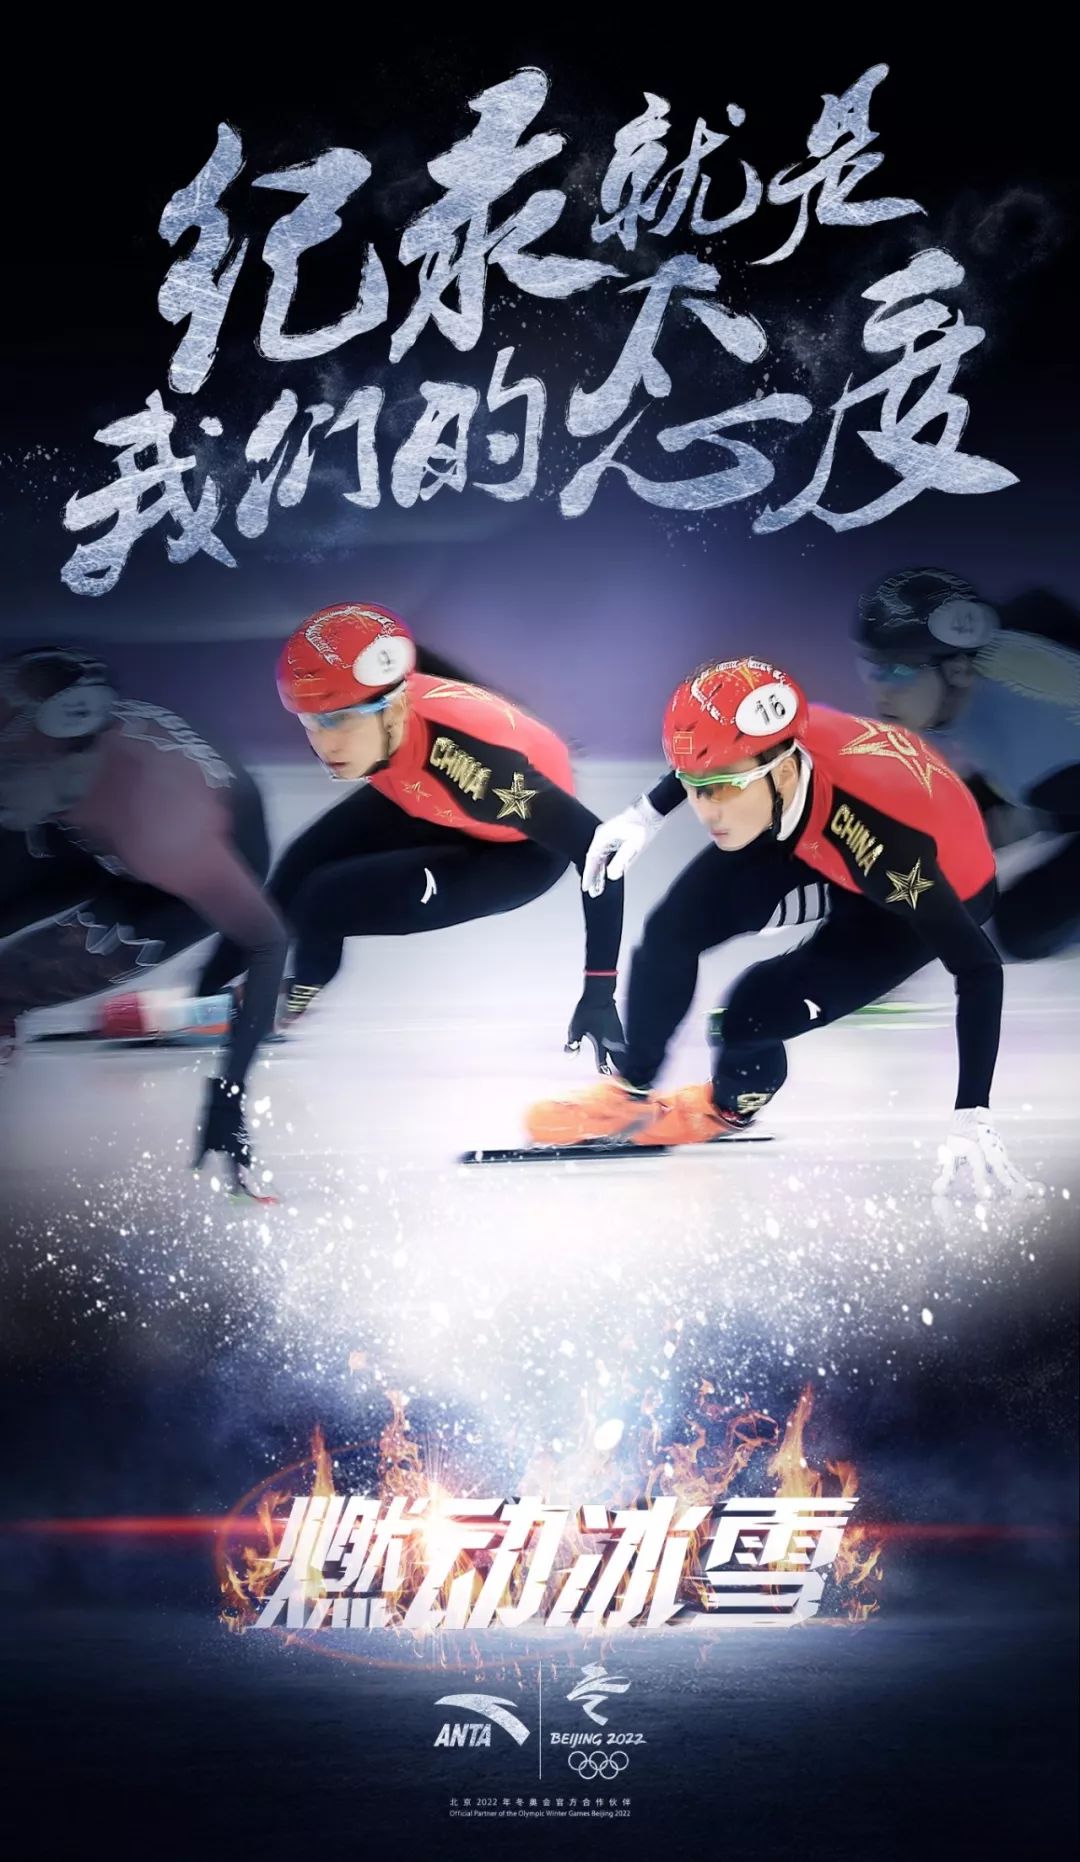 对中国短道速滑而言这是一个不甘心的夜晚在女子500米和男子1000米